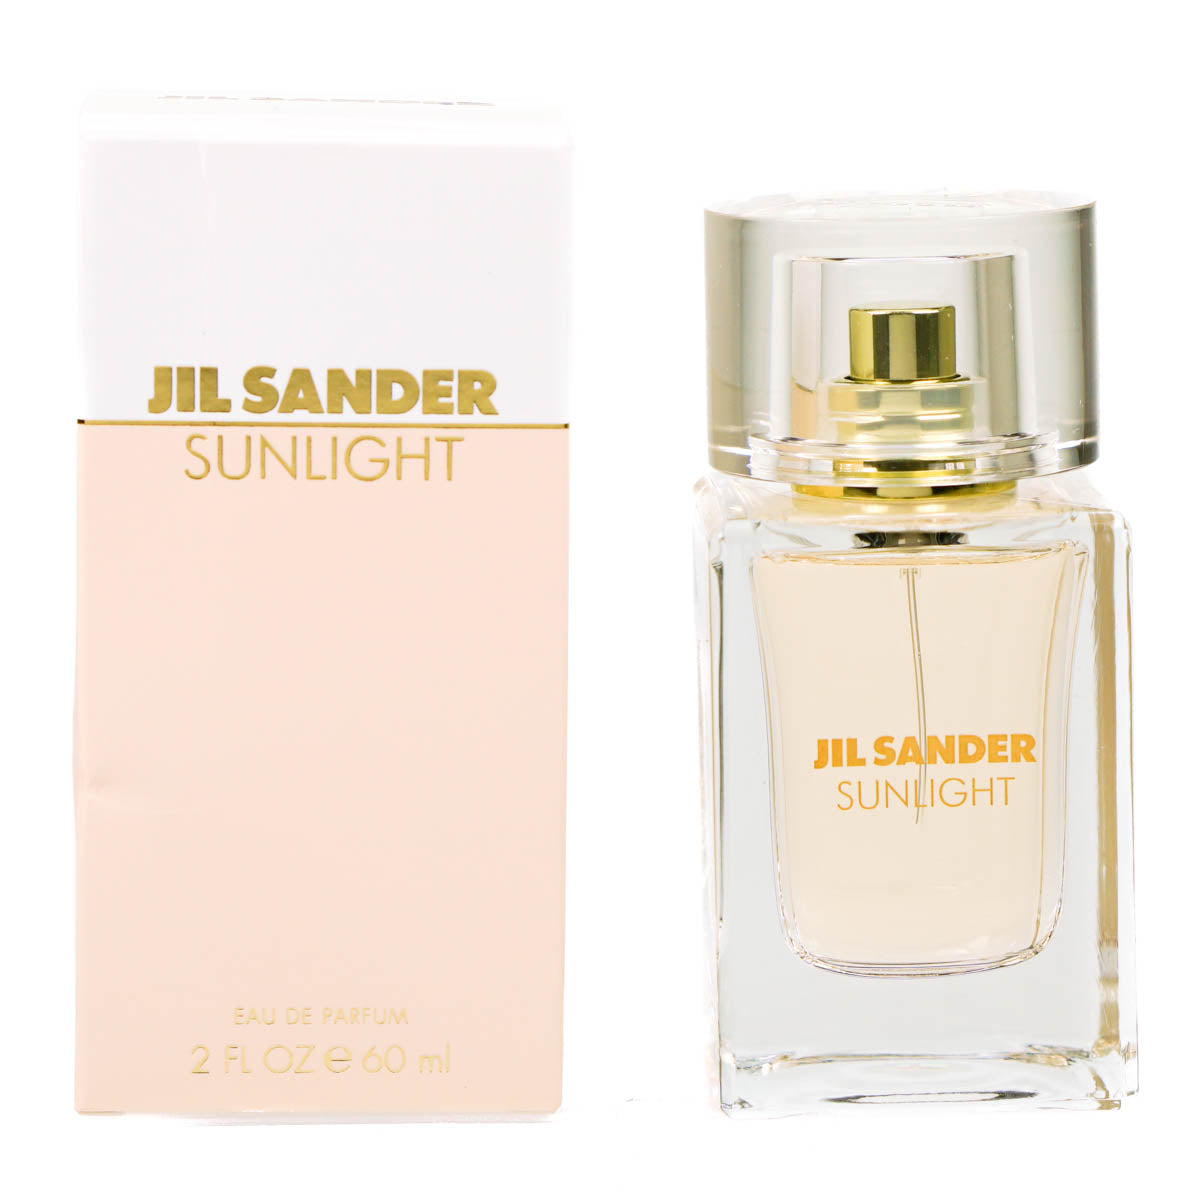 Jil Sander Sunlight 60ml Eau De Parfum